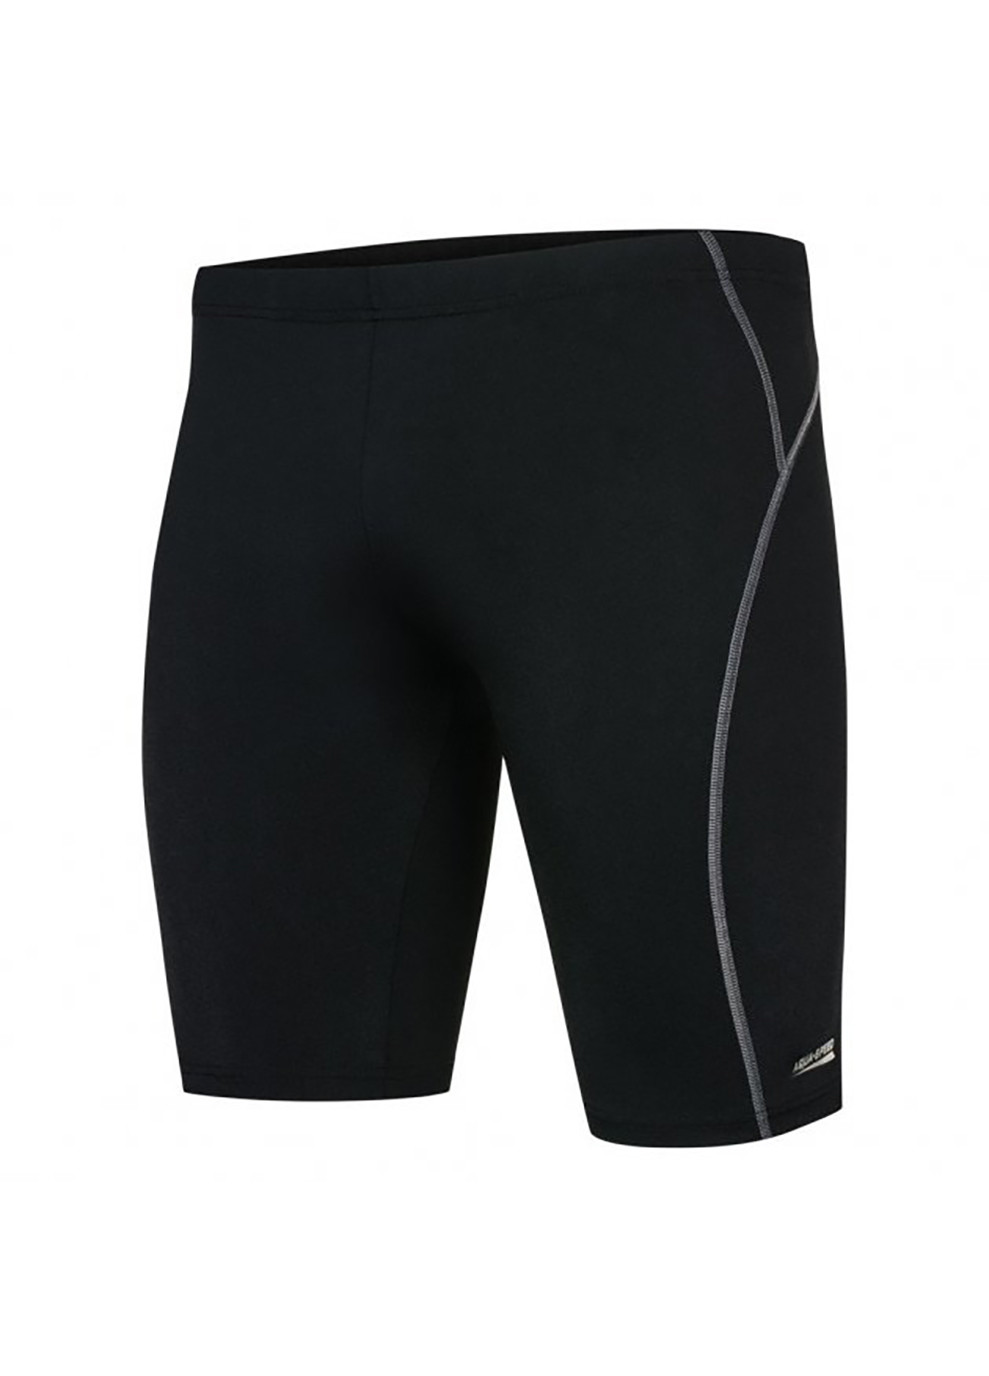 Мужские черные спортивные плавки-шорты для мужчин aqua peed blake 4592 черный Aqua Speed